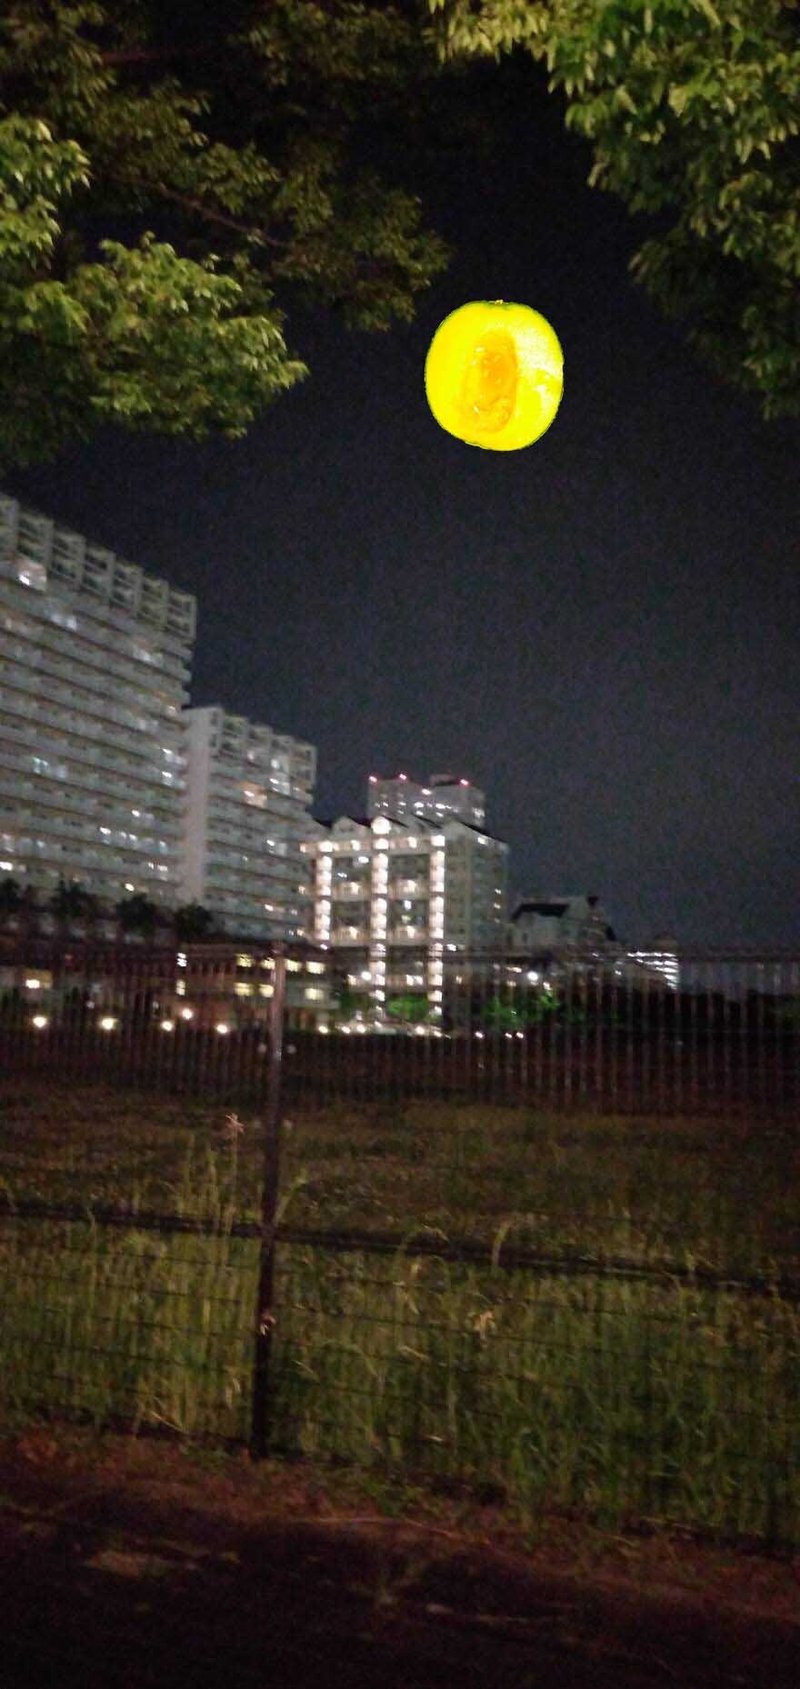 昨夜のスーパームーンを心待ちにしていた母＠神戸から、①満月が観られるはずだった位置からの夜景写真と、②このメロンが夜空にあったら甘いスーパームーン！とかって写真が２枚送られてきたので、娘（私）がPhotoshopを使って作ってみました。ご笑納ください。